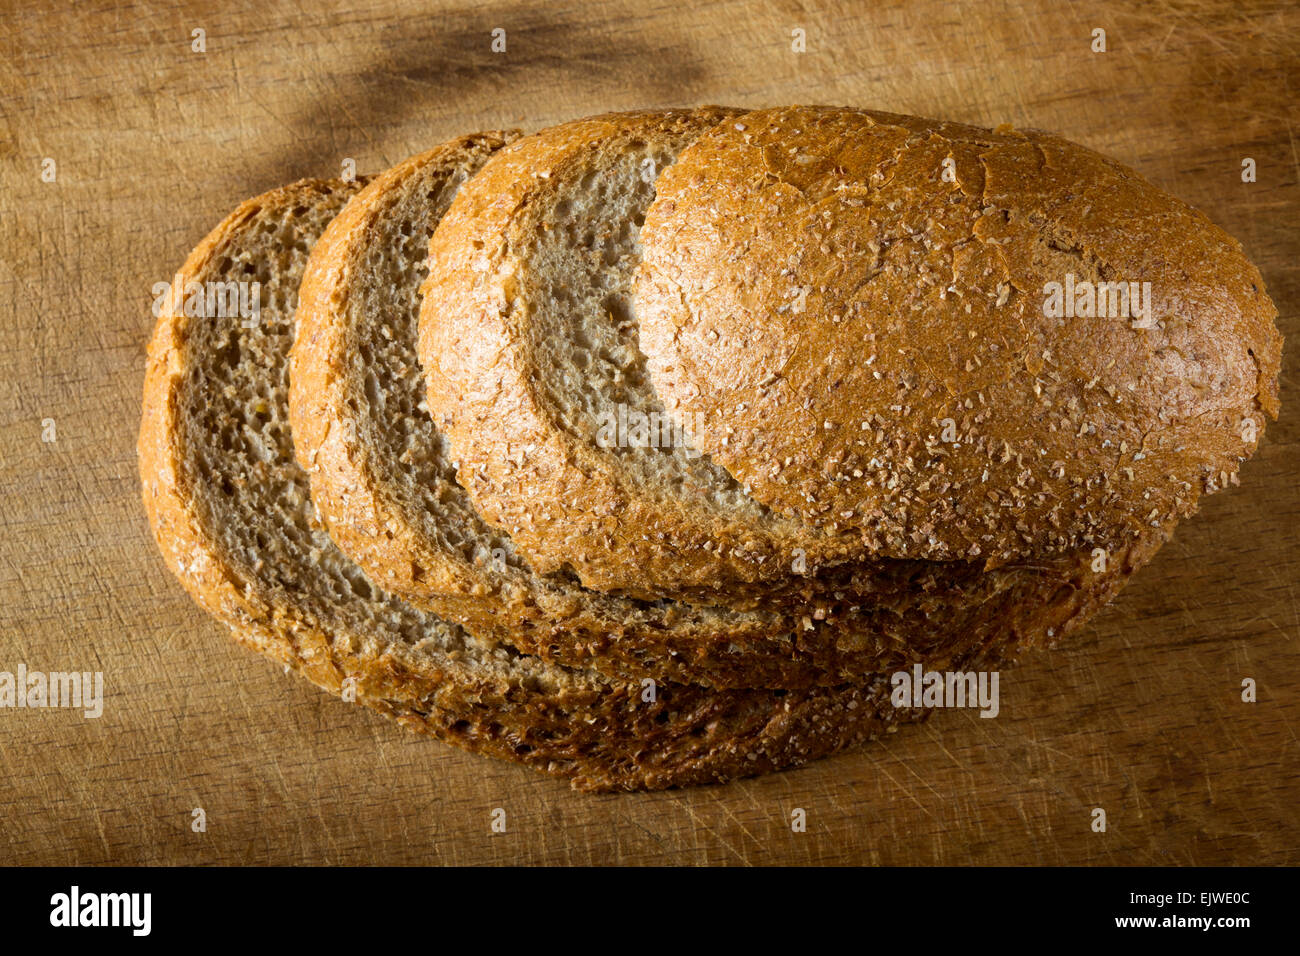 Pane rustico. DoF poco profondo, concentrarsi sulle fette di pane Foto Stock